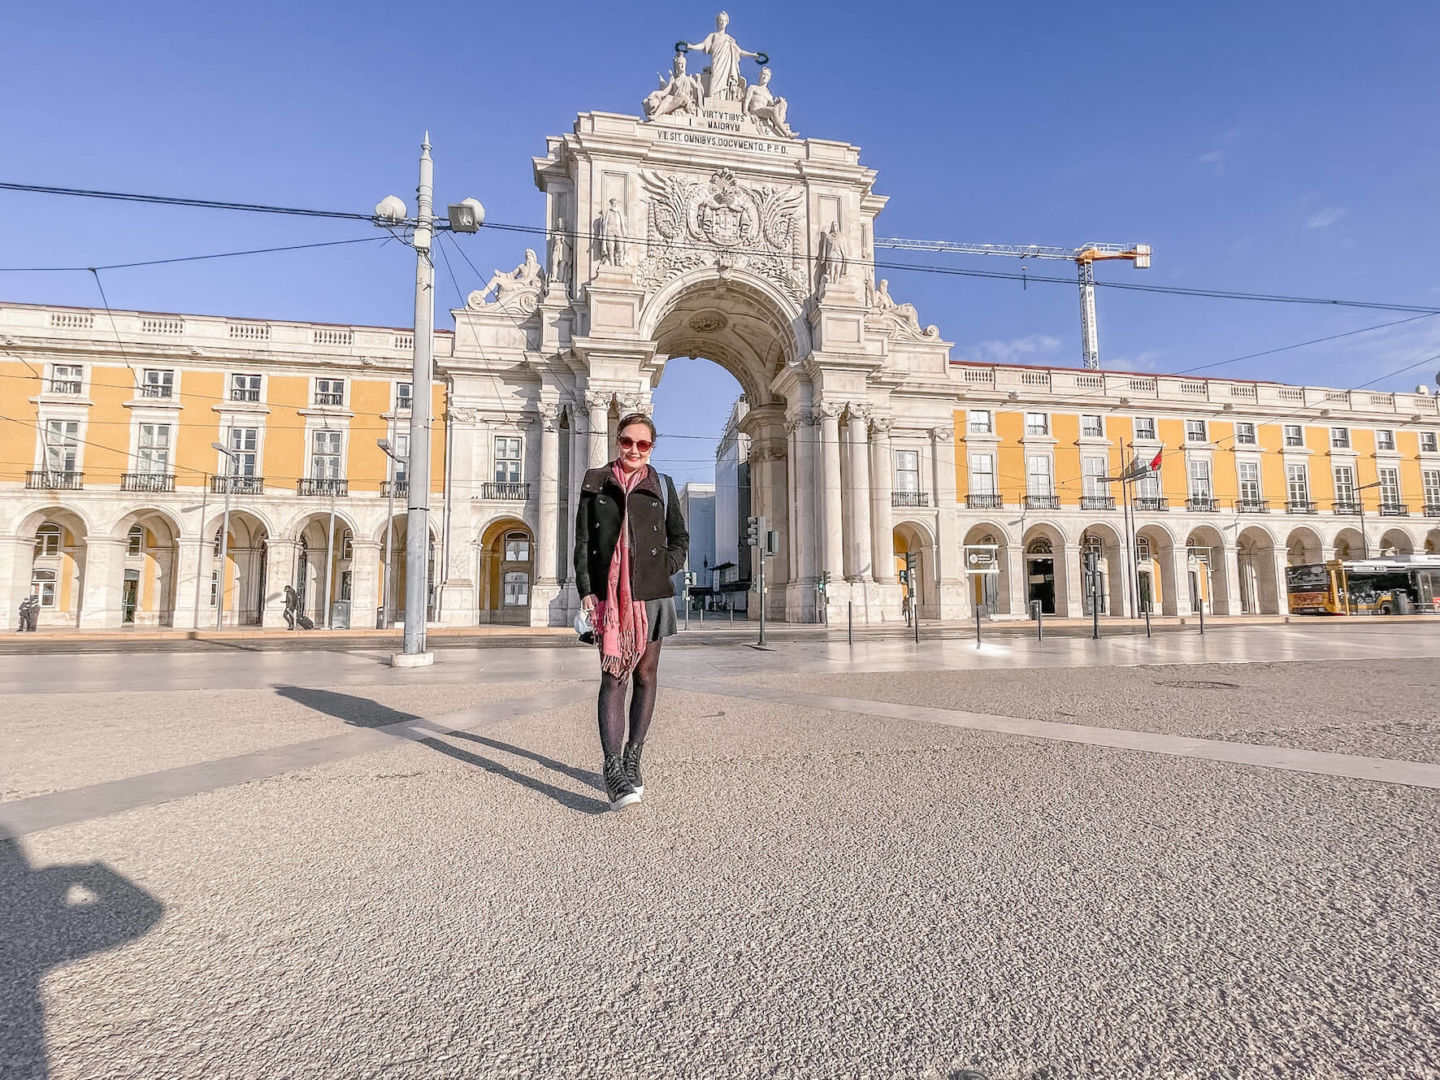 Praça do Comércio em Lisboa, em frente ao Arco da Rua Augusta. Céu azul e ninguém ao redor